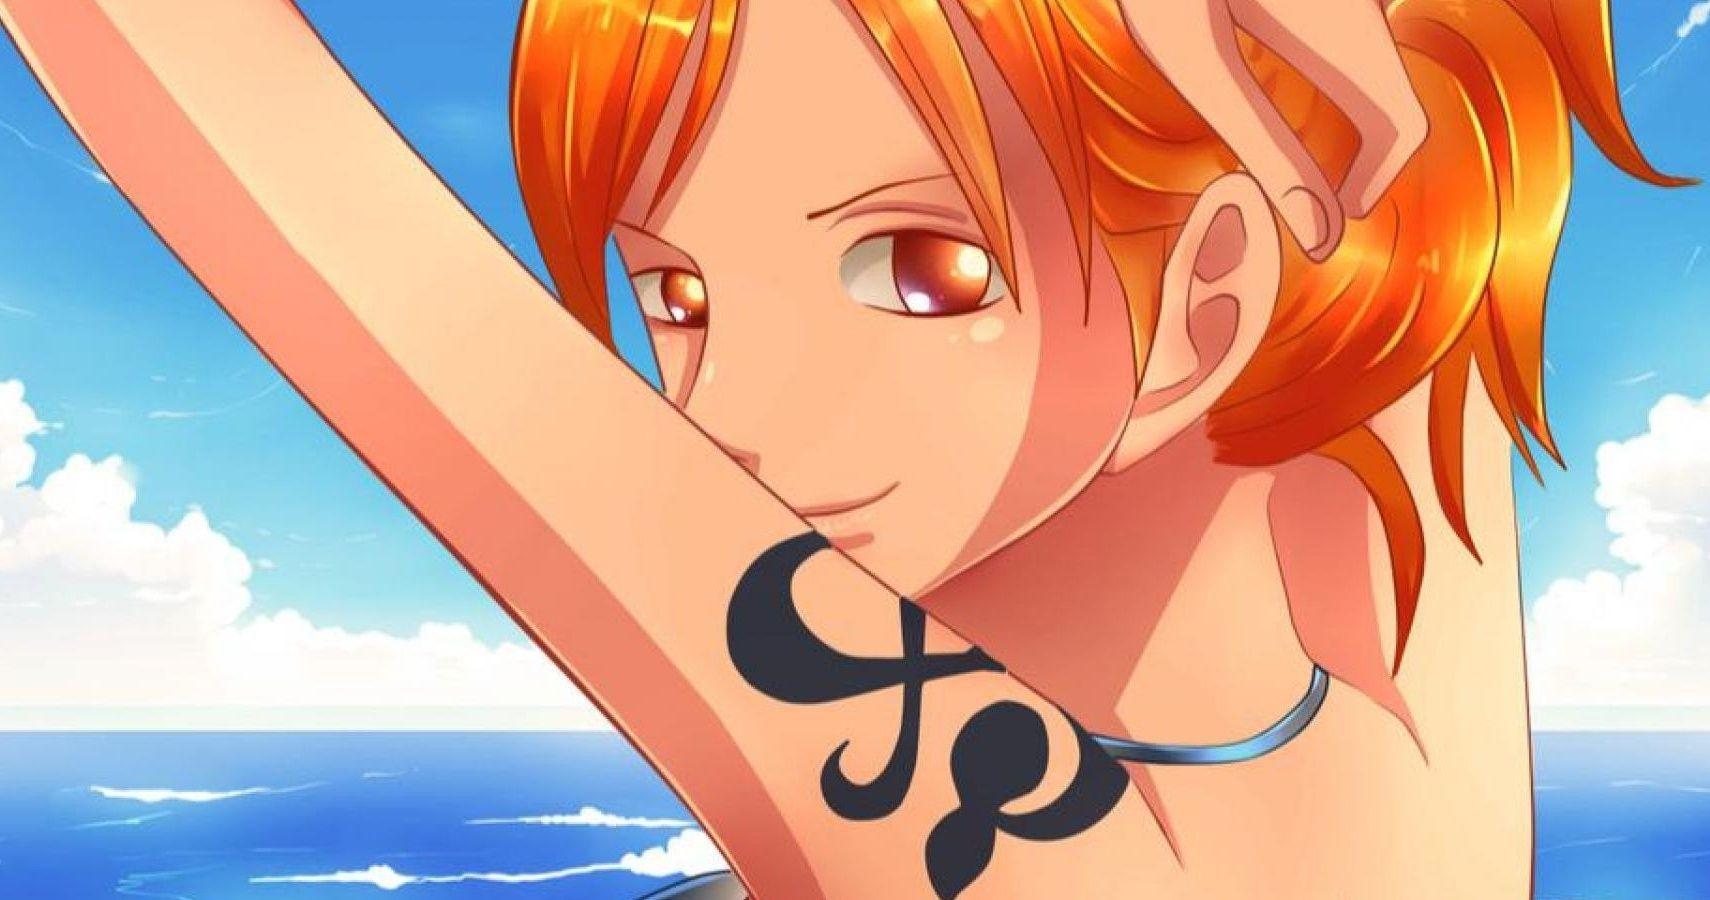 1710 x 900 · jpeg - Nami Art One Piece - 1710x900 - Download HD Wallpaper - WallpaperTip